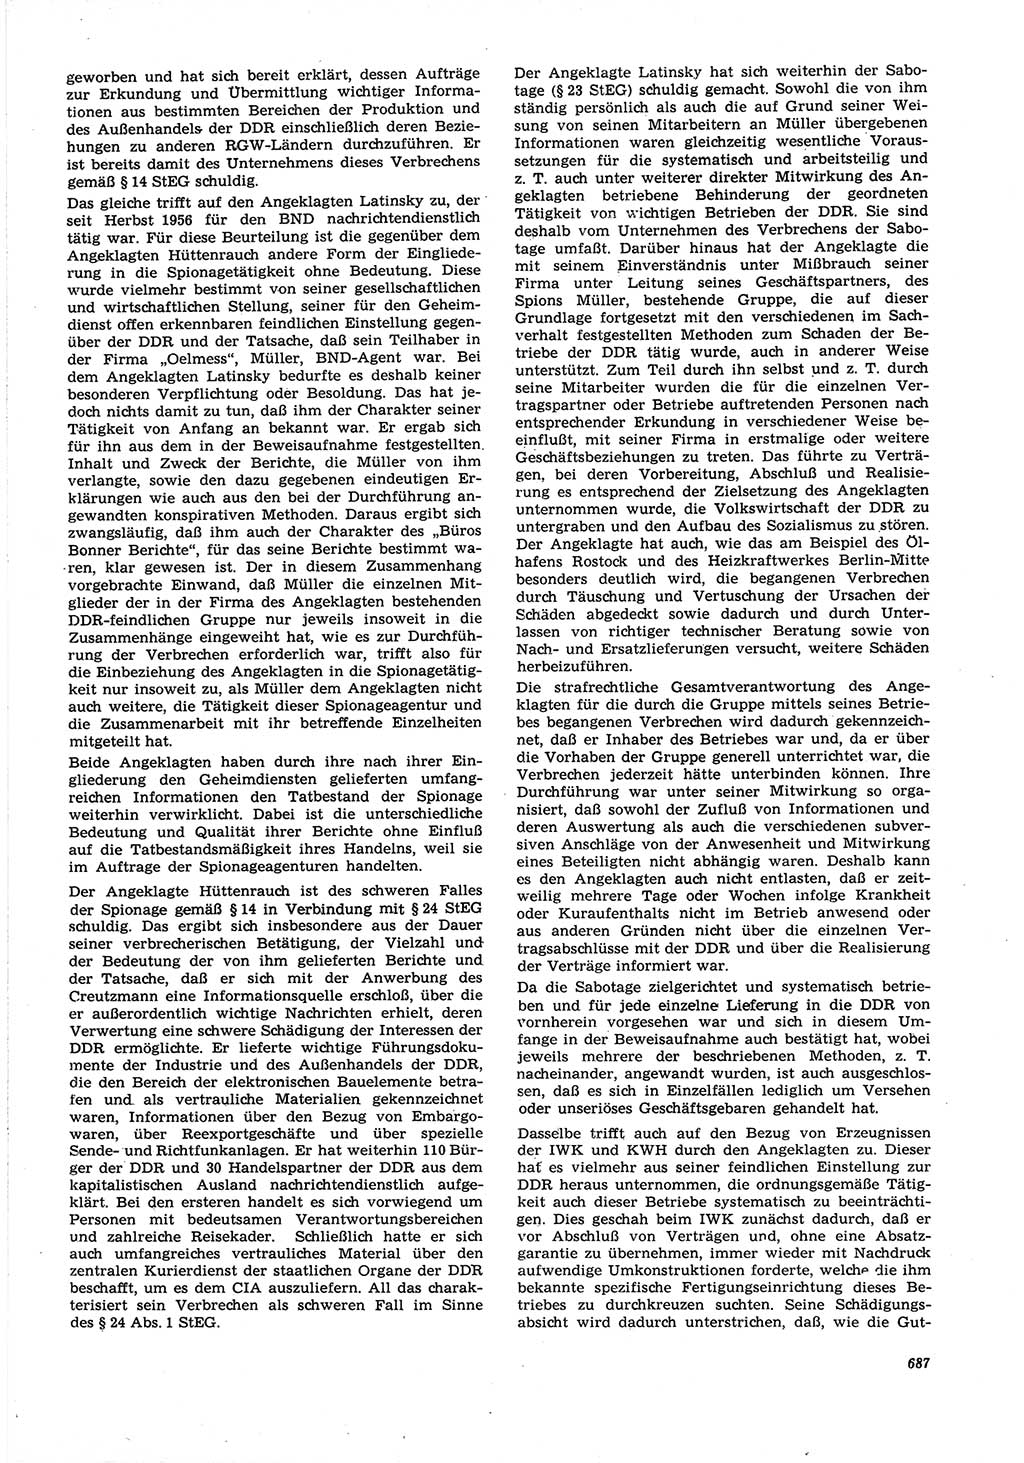 Neue Justiz (NJ), Zeitschrift für Recht und Rechtswissenschaft [Deutsche Demokratische Republik (DDR)], 21. Jahrgang 1967, Seite 687 (NJ DDR 1967, S. 687)